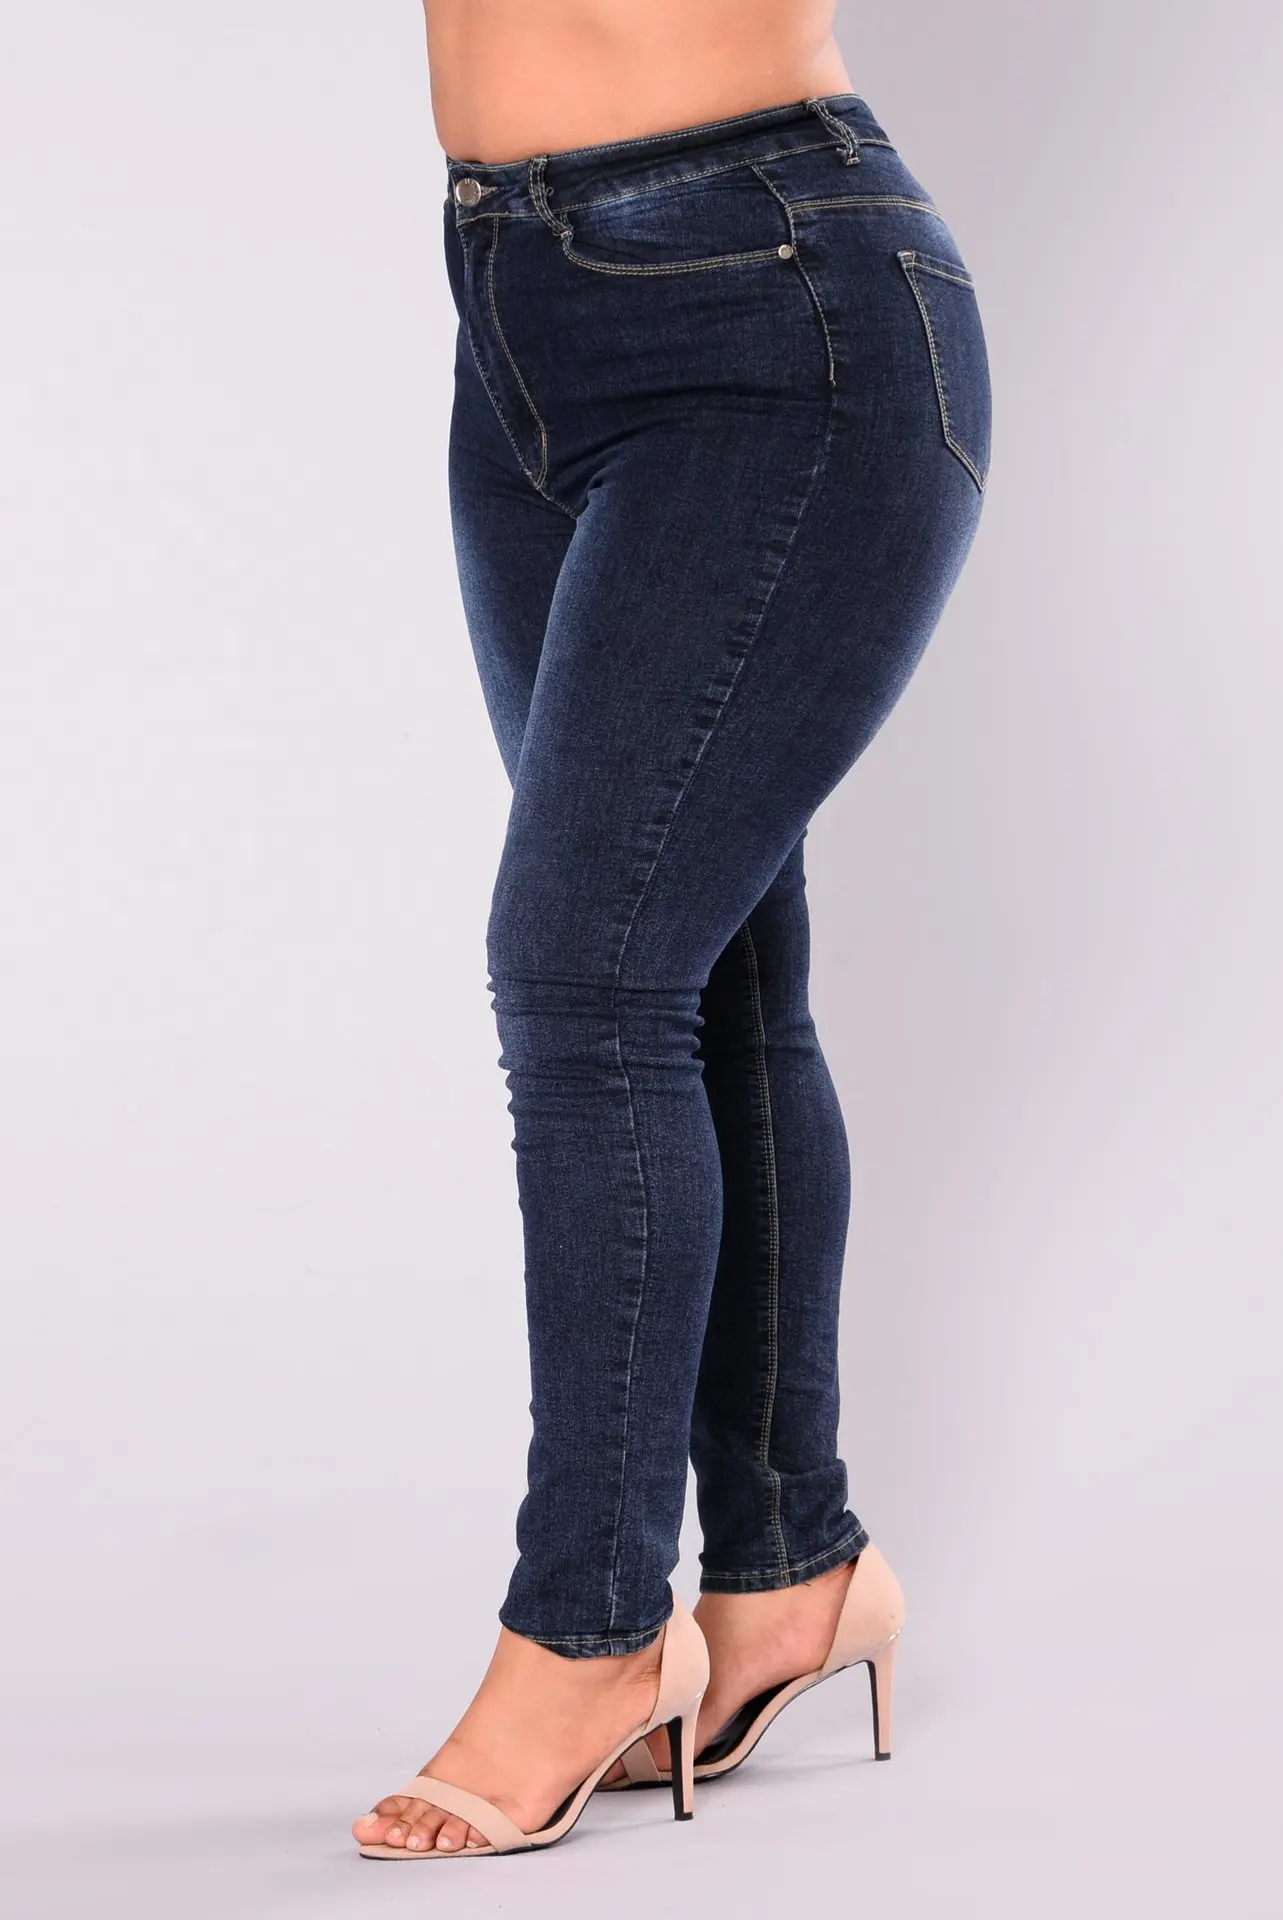 TUHAO весенние женские джинсы больших размеров 5XL, 6XL, 7XL, женские Стрейчевые джинсовые штаны с эффектом пуш-ап, джинсы больших размеров, женские брюки размера плюс